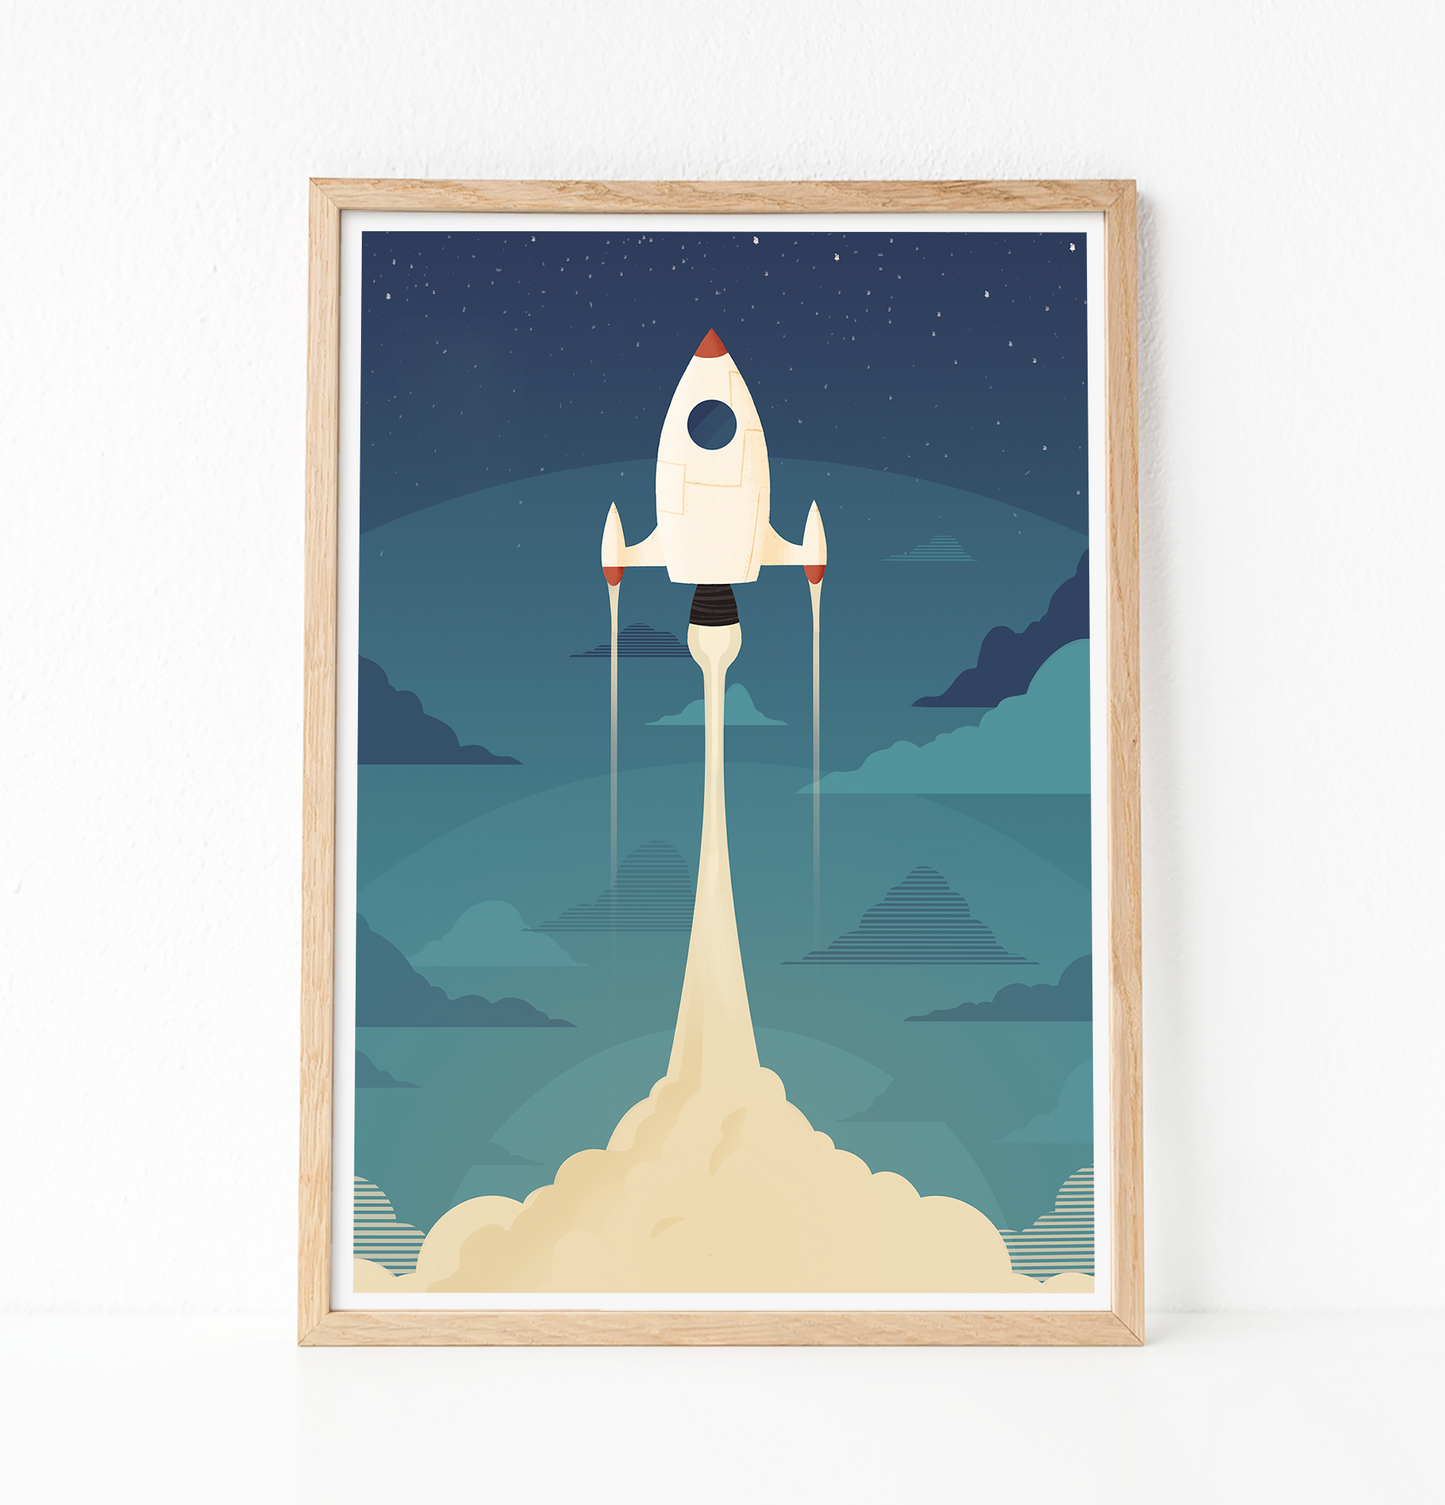 Spaceship launch print